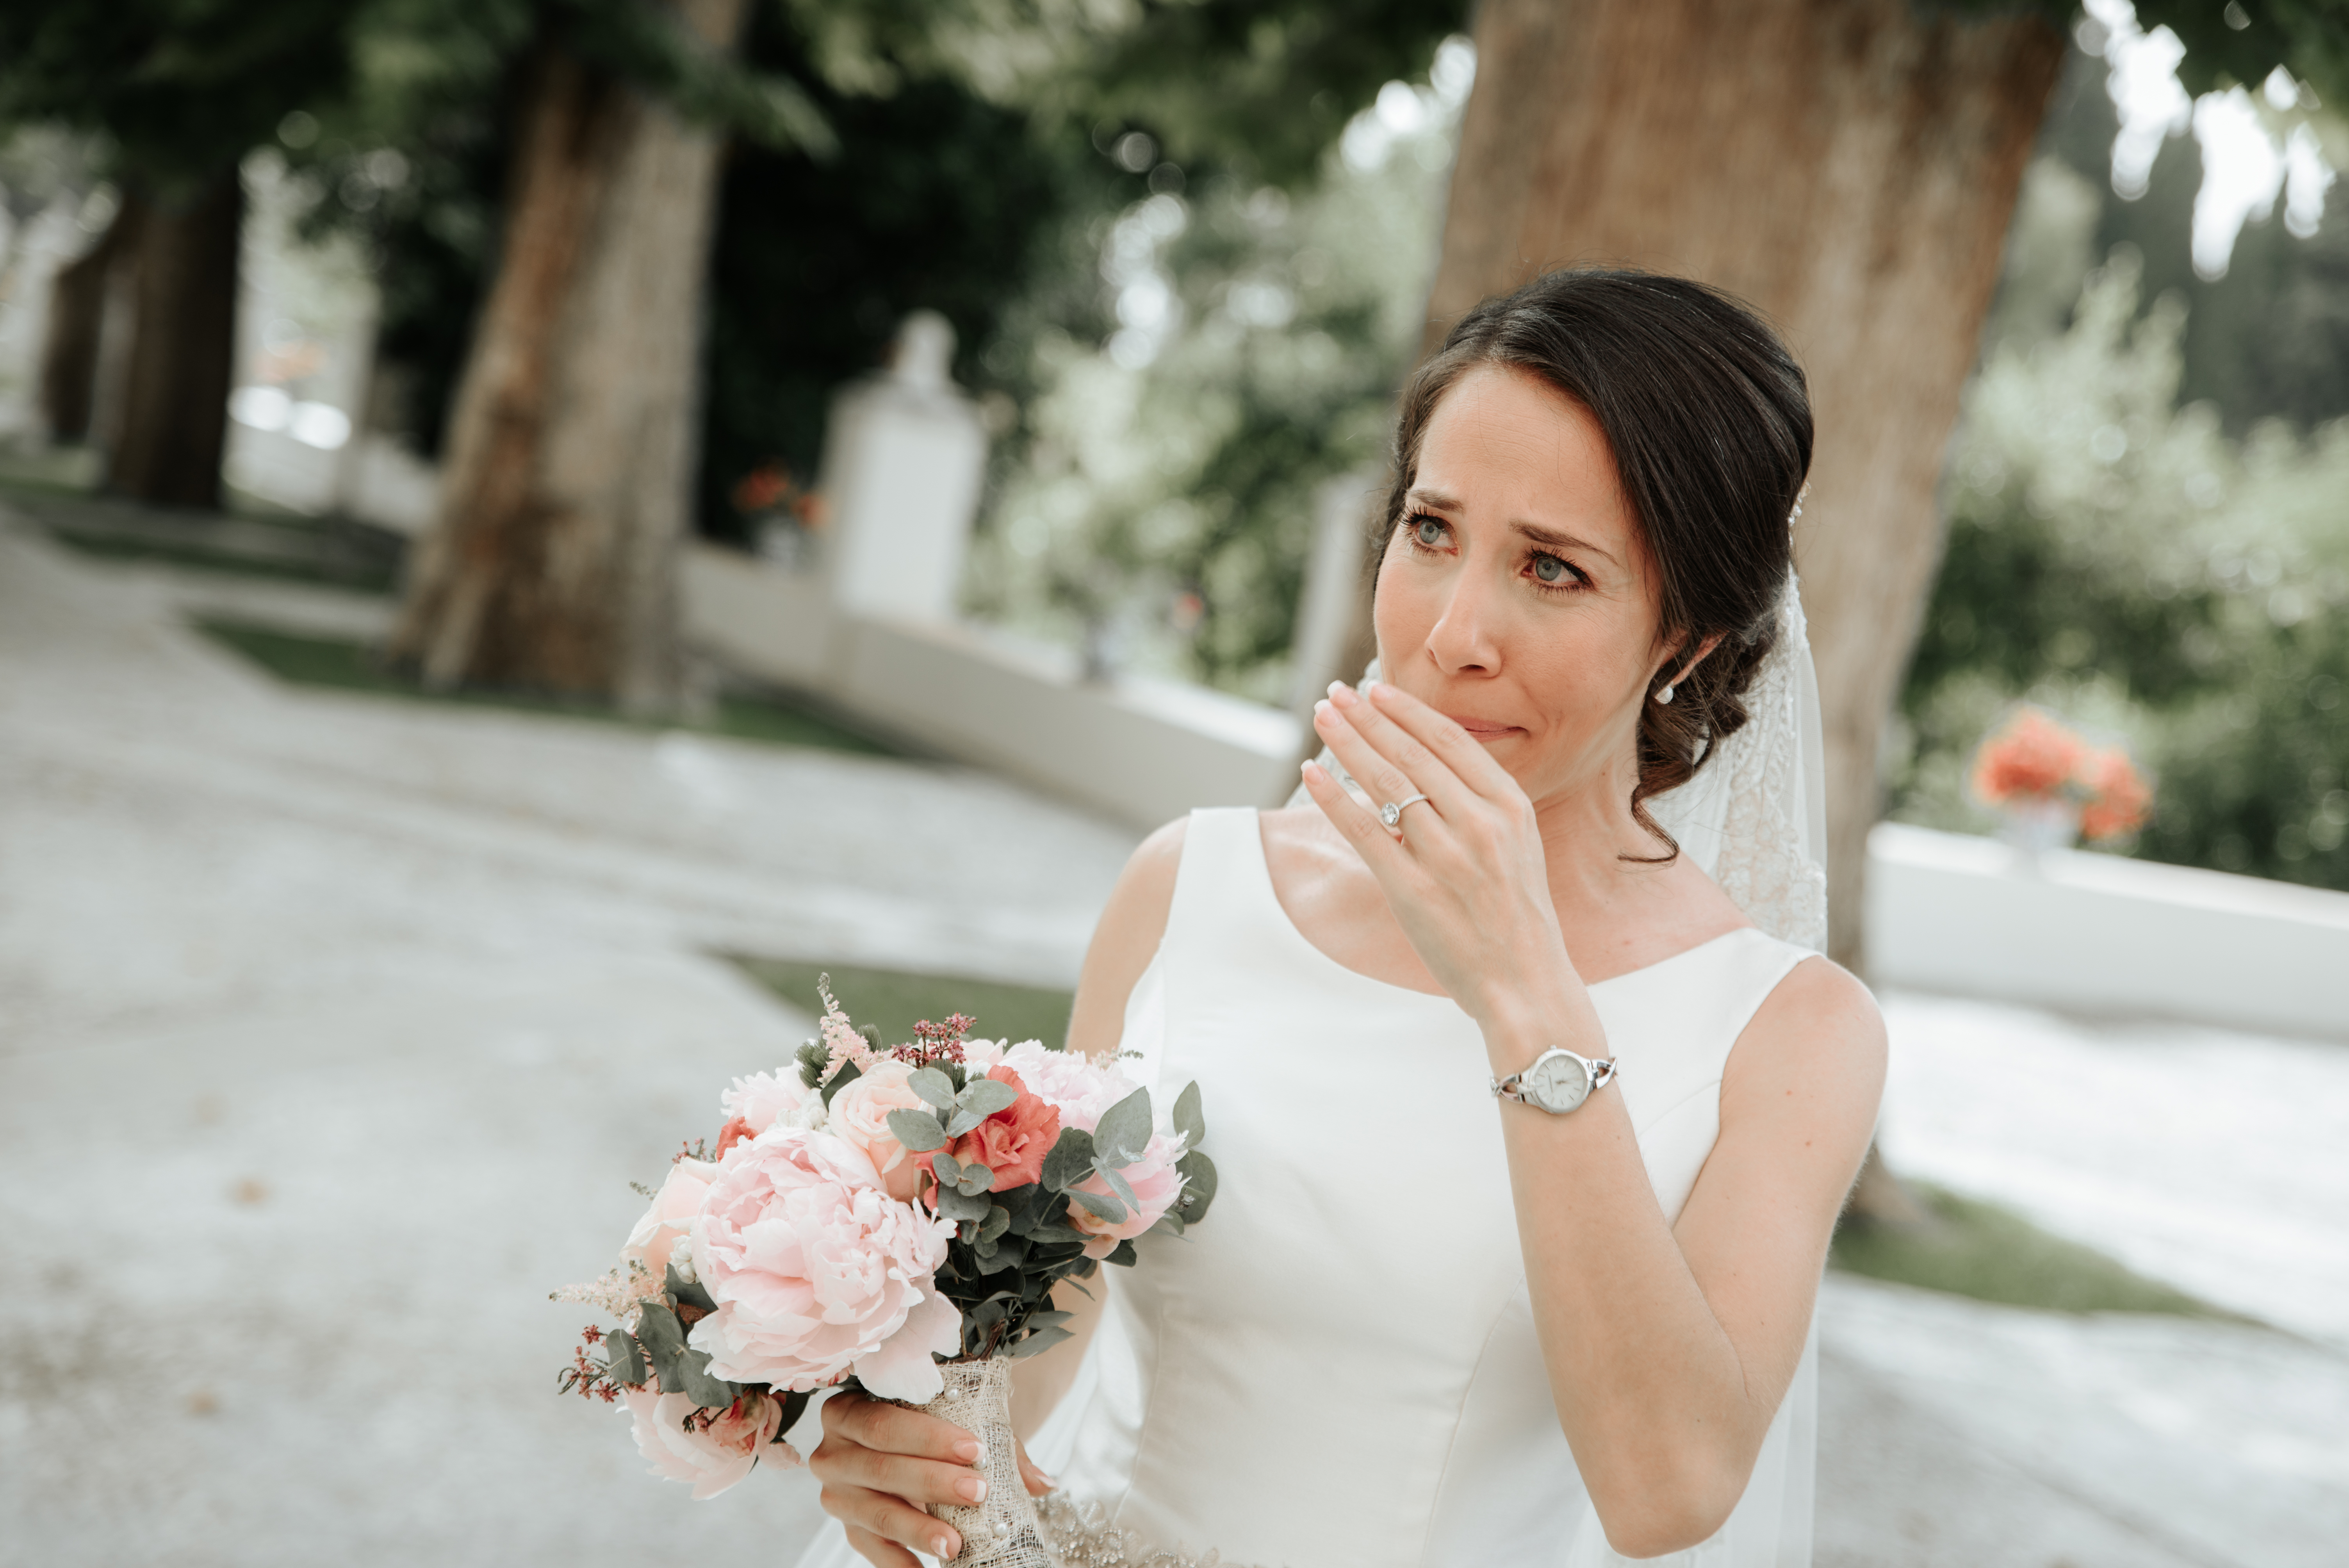 Une mariée qui pleure en tenant un bouquet | Source : Shutterstock